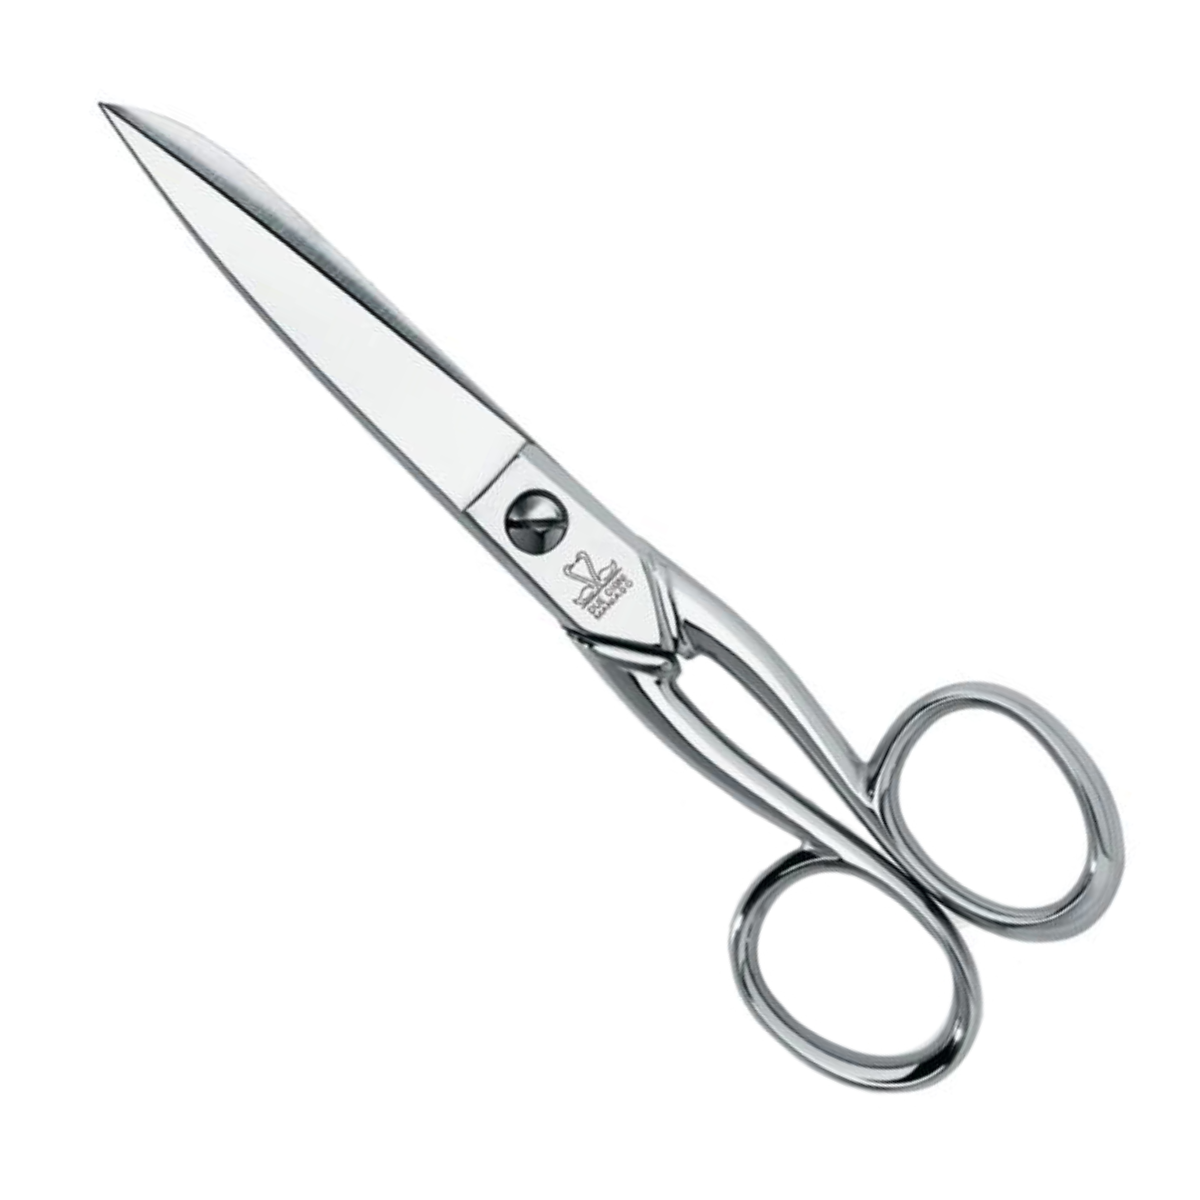 Best 7 Household Scissors